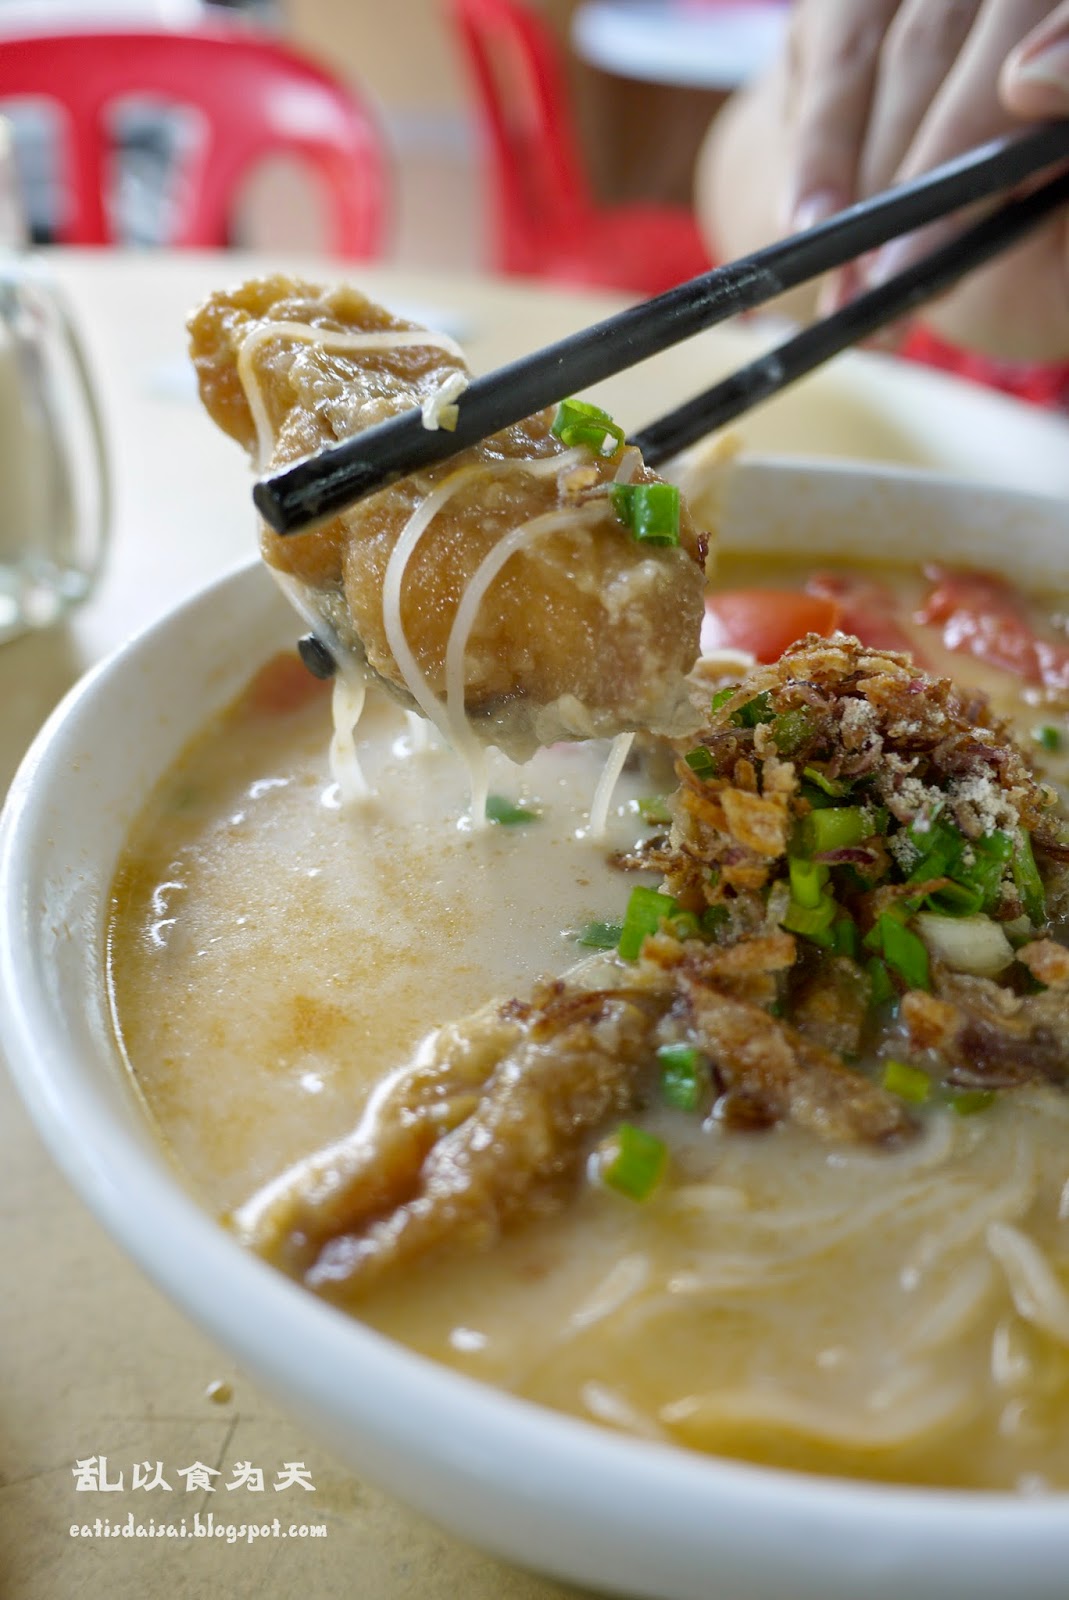 小夫妻鱼头米粉 Couple Stall Fish Head Noodles @ GP Falim Food Court 城中城菜单 ...